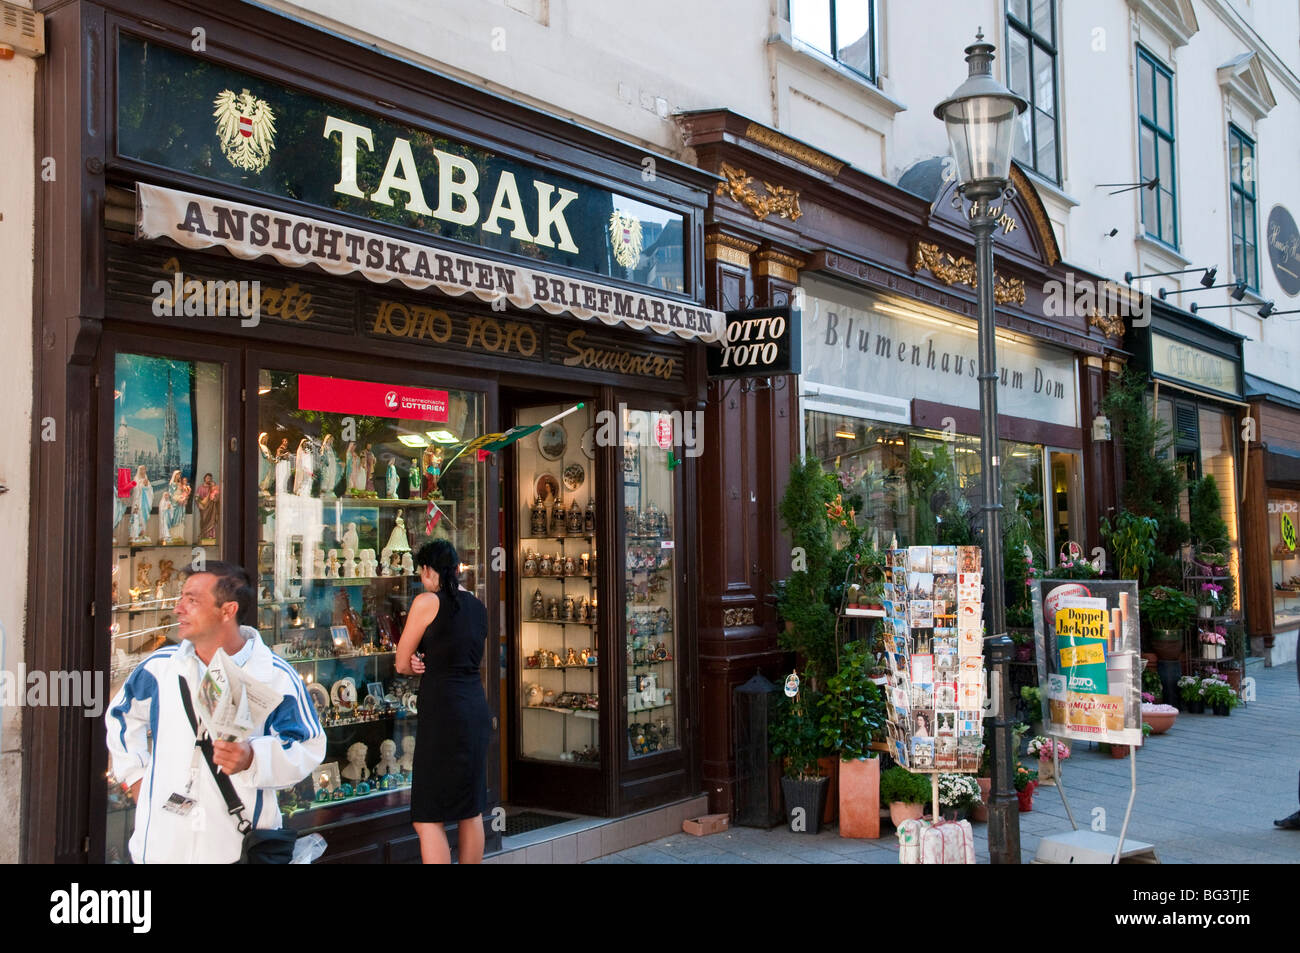 Tabakgeschäft (Trafik), Stephansplatz, Wien, Österreich | St. Stephen's Square, tobacco shop, Vienna, Austria Stock Photo